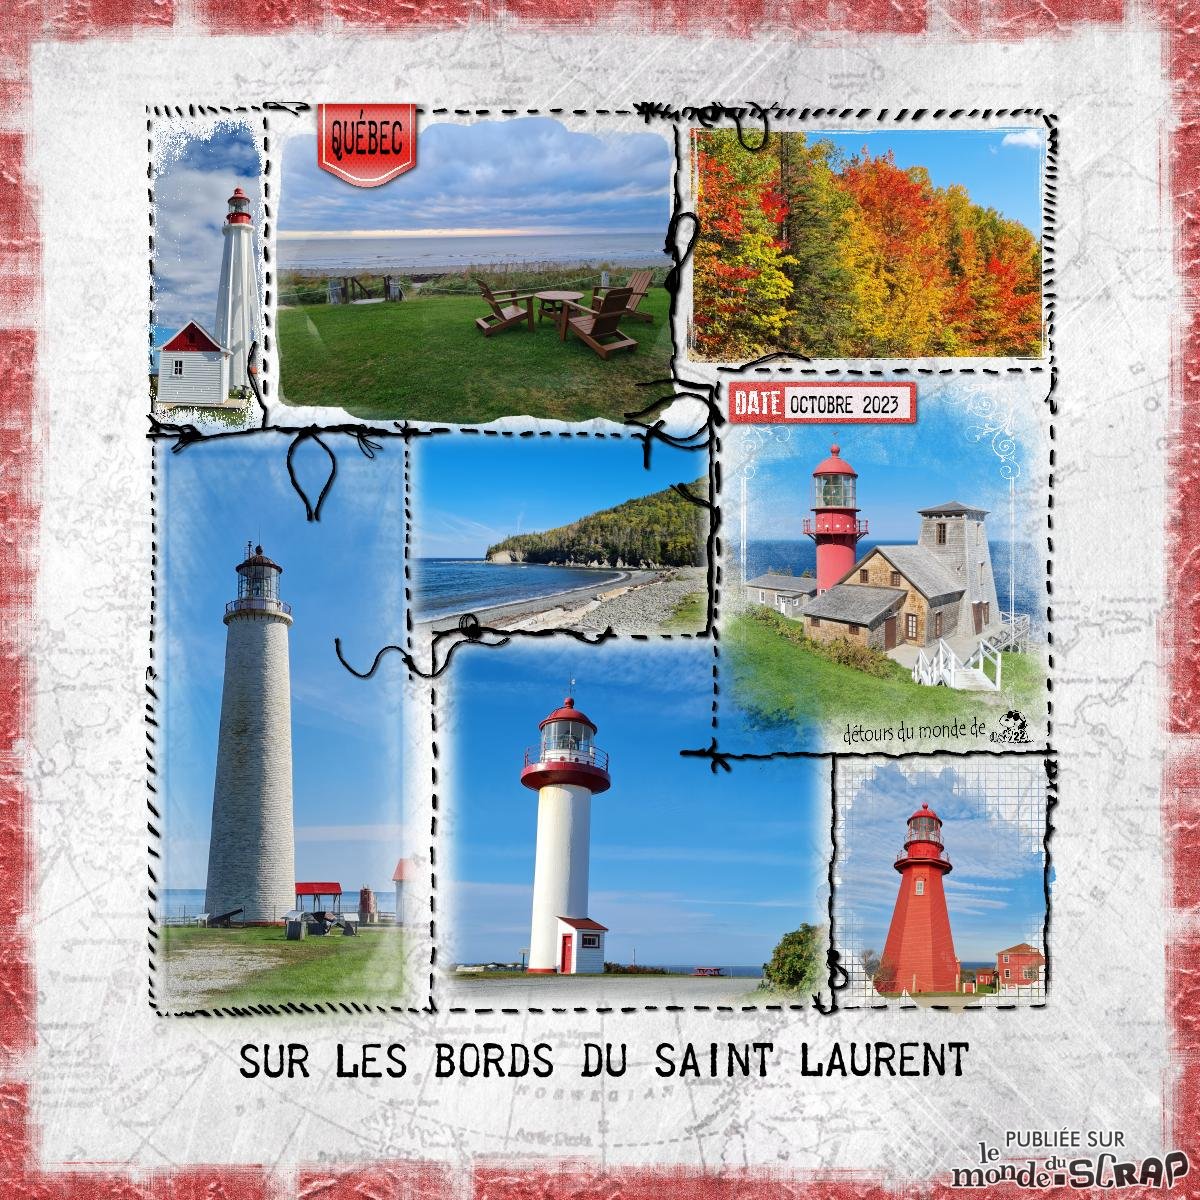 Sur les bords du Saint Laurent